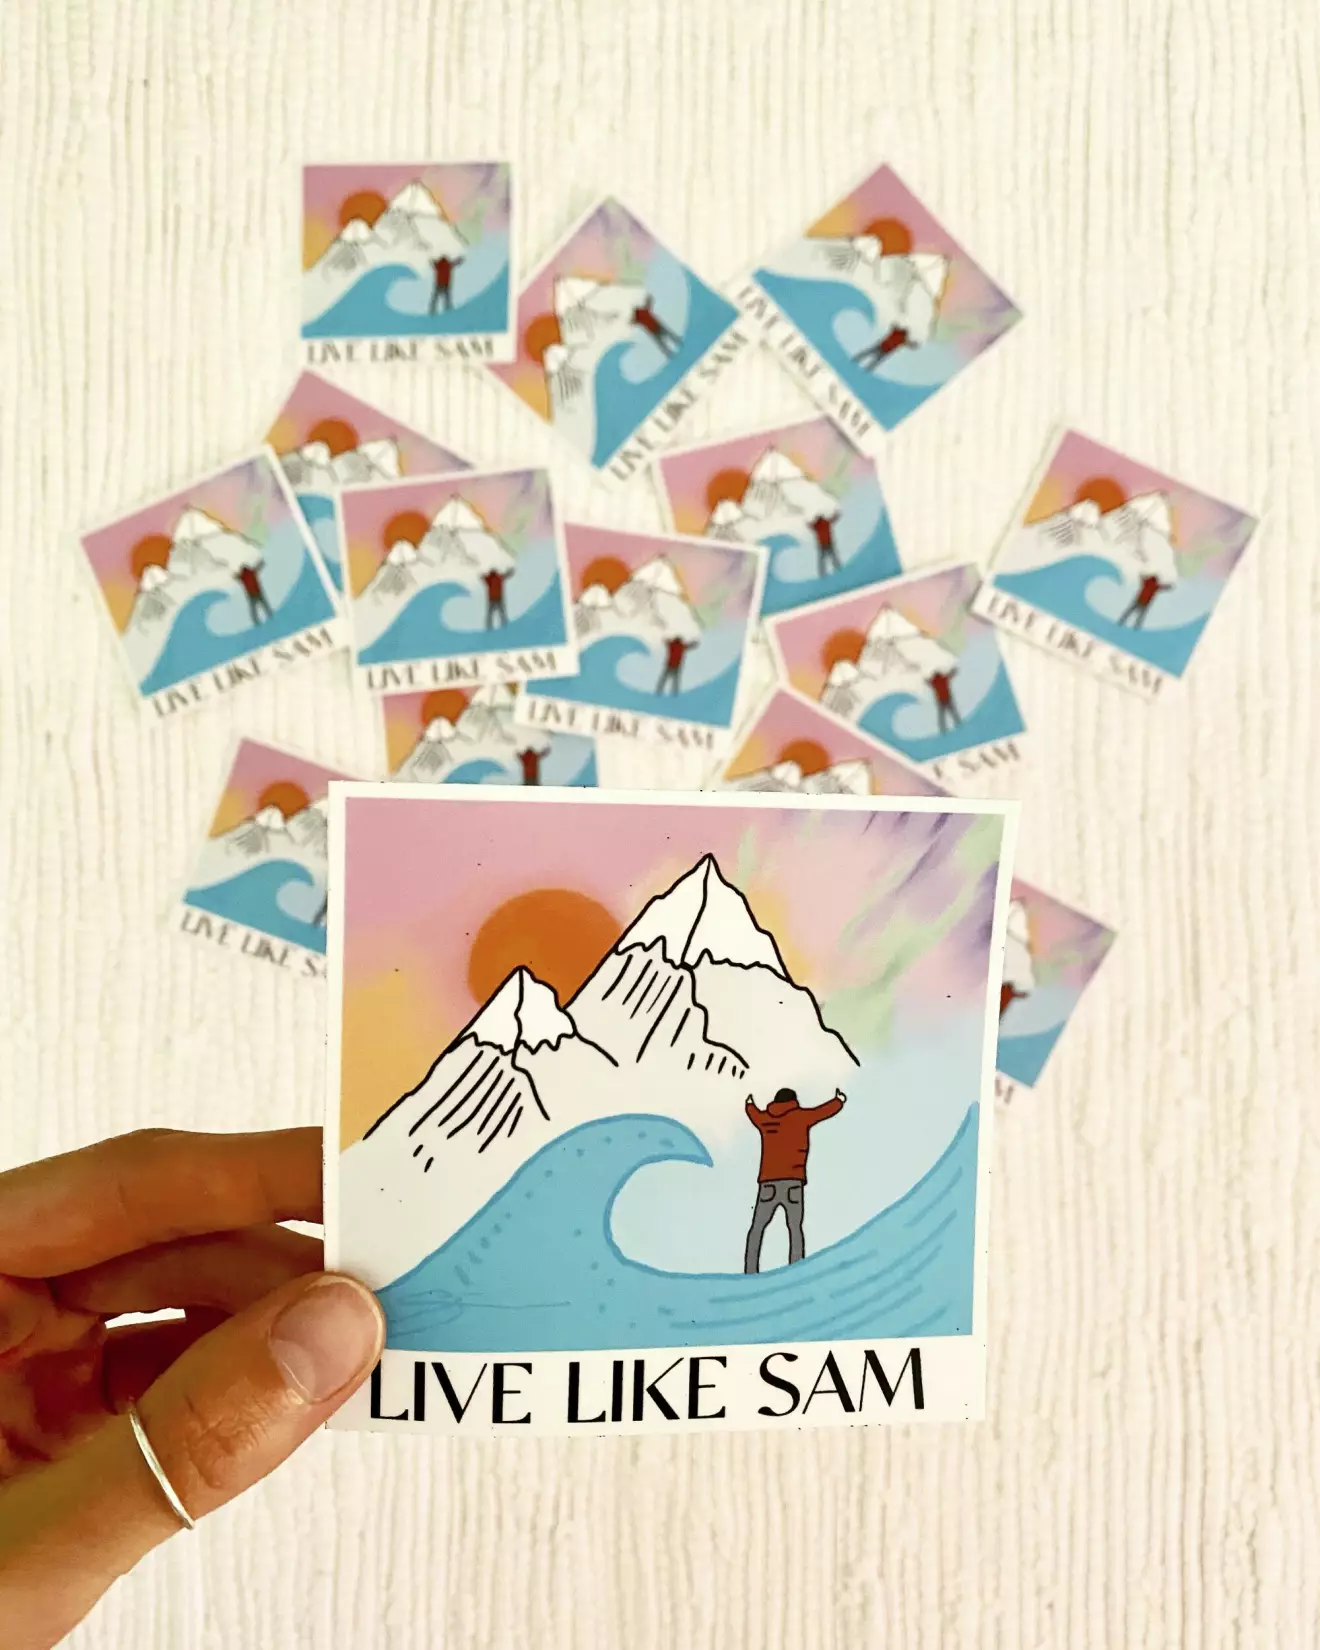 Klistermärken med uppmaningen ”Live like Sam”.